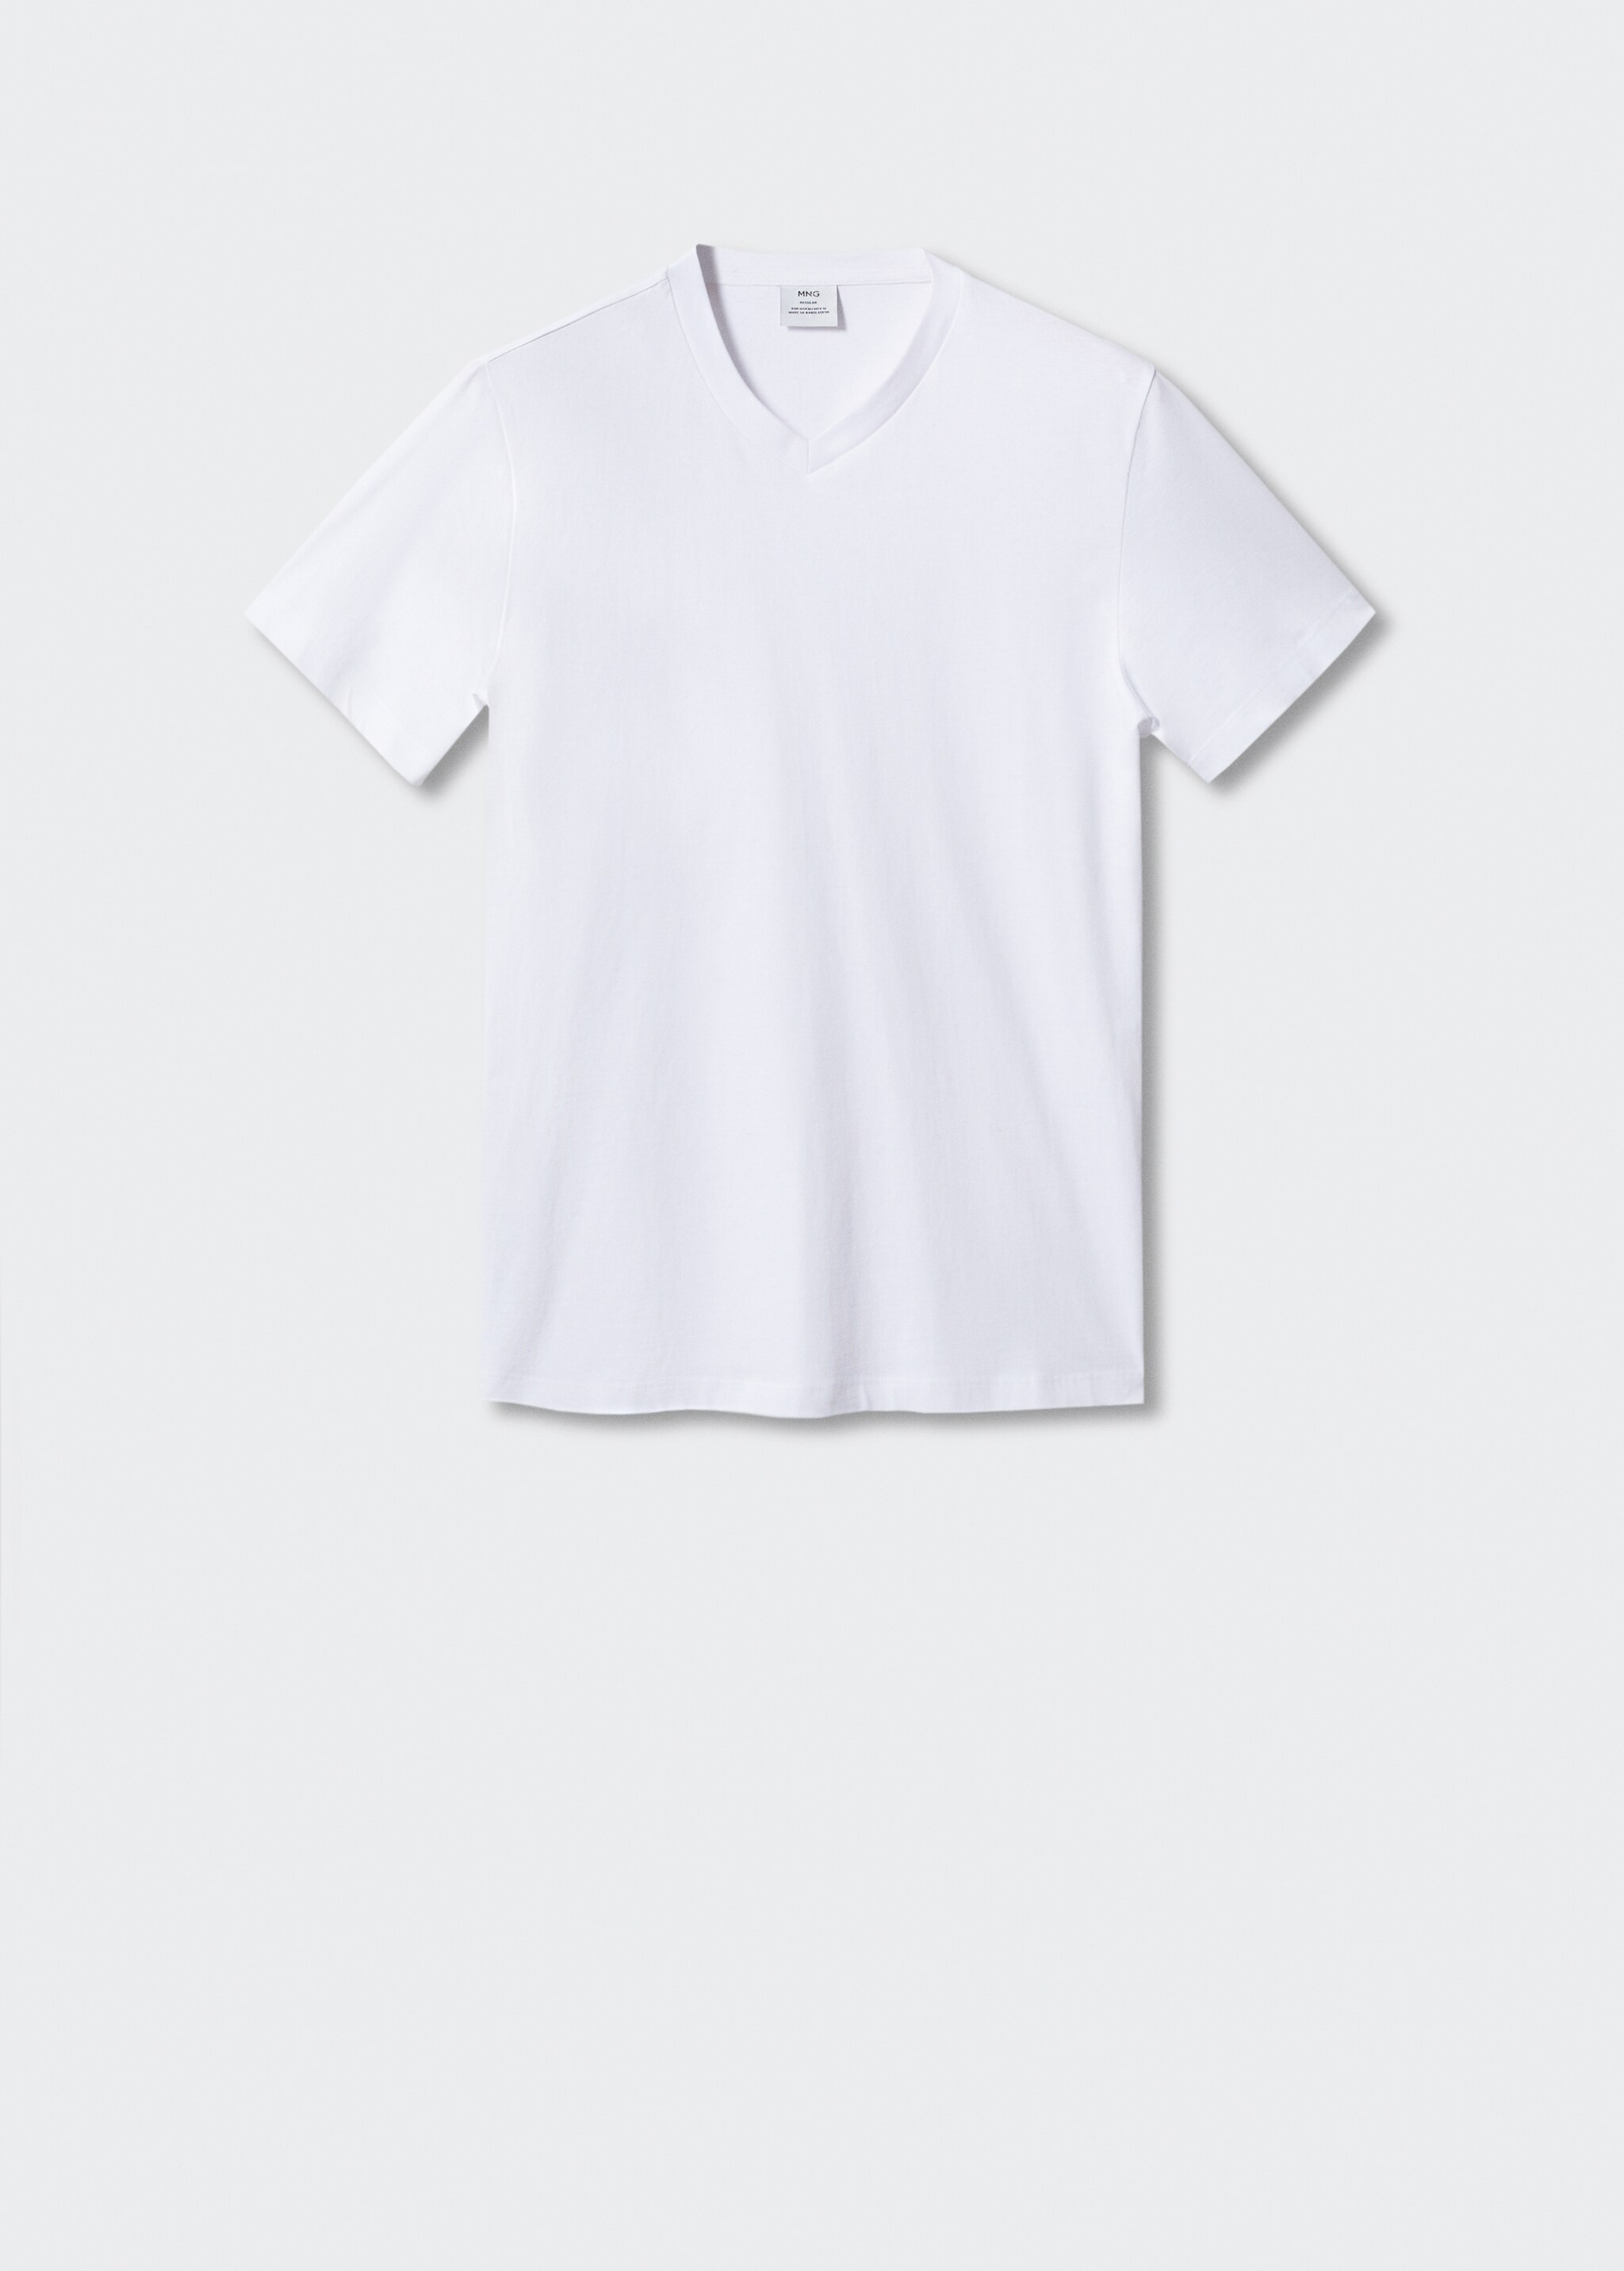 Camiseta básica algodón cuello pico - Artículo sin modelo